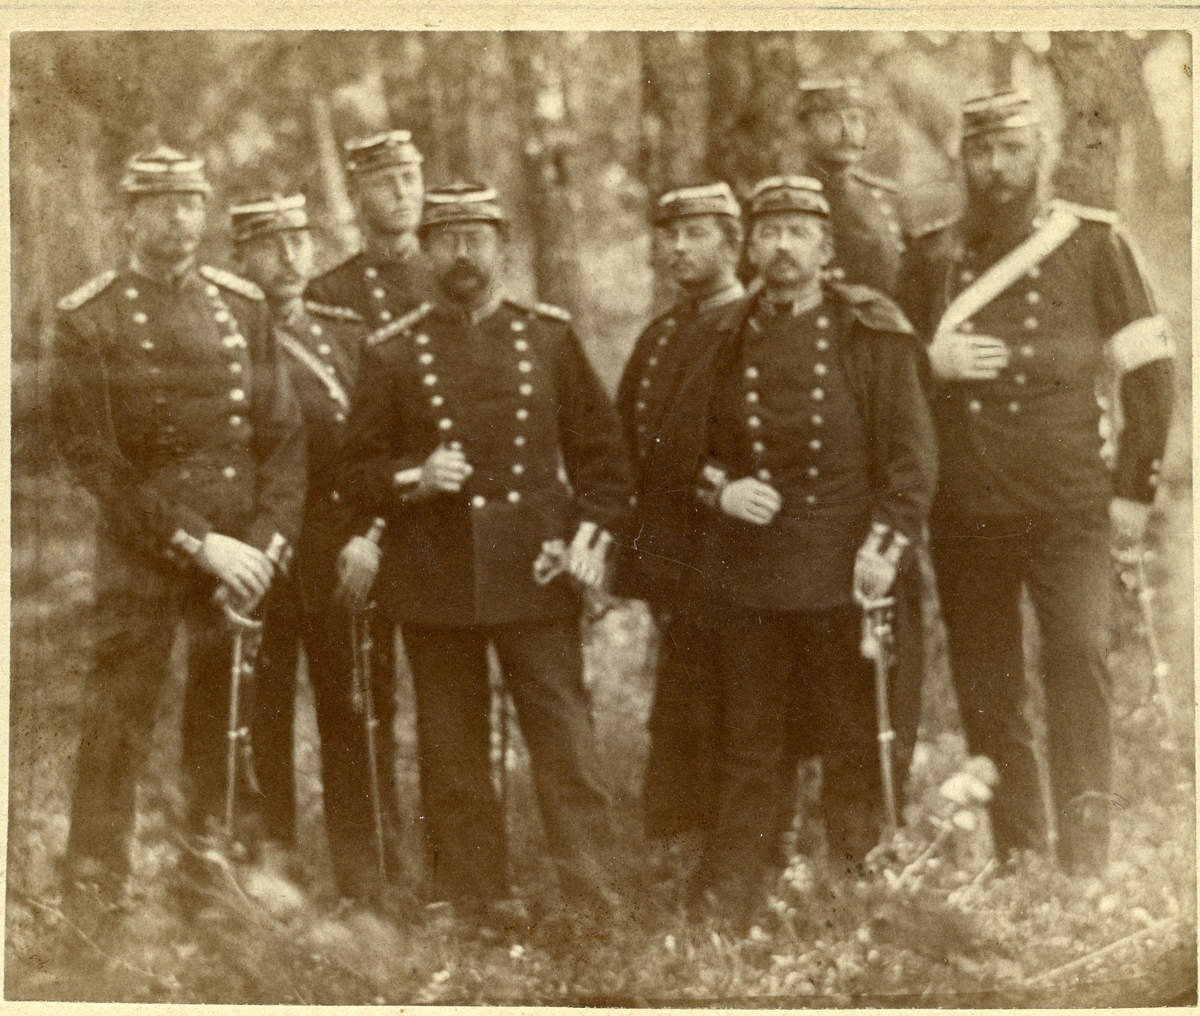 Västerfärnebo sn, Sala kn, Salbohed.
Militärer, 1882.